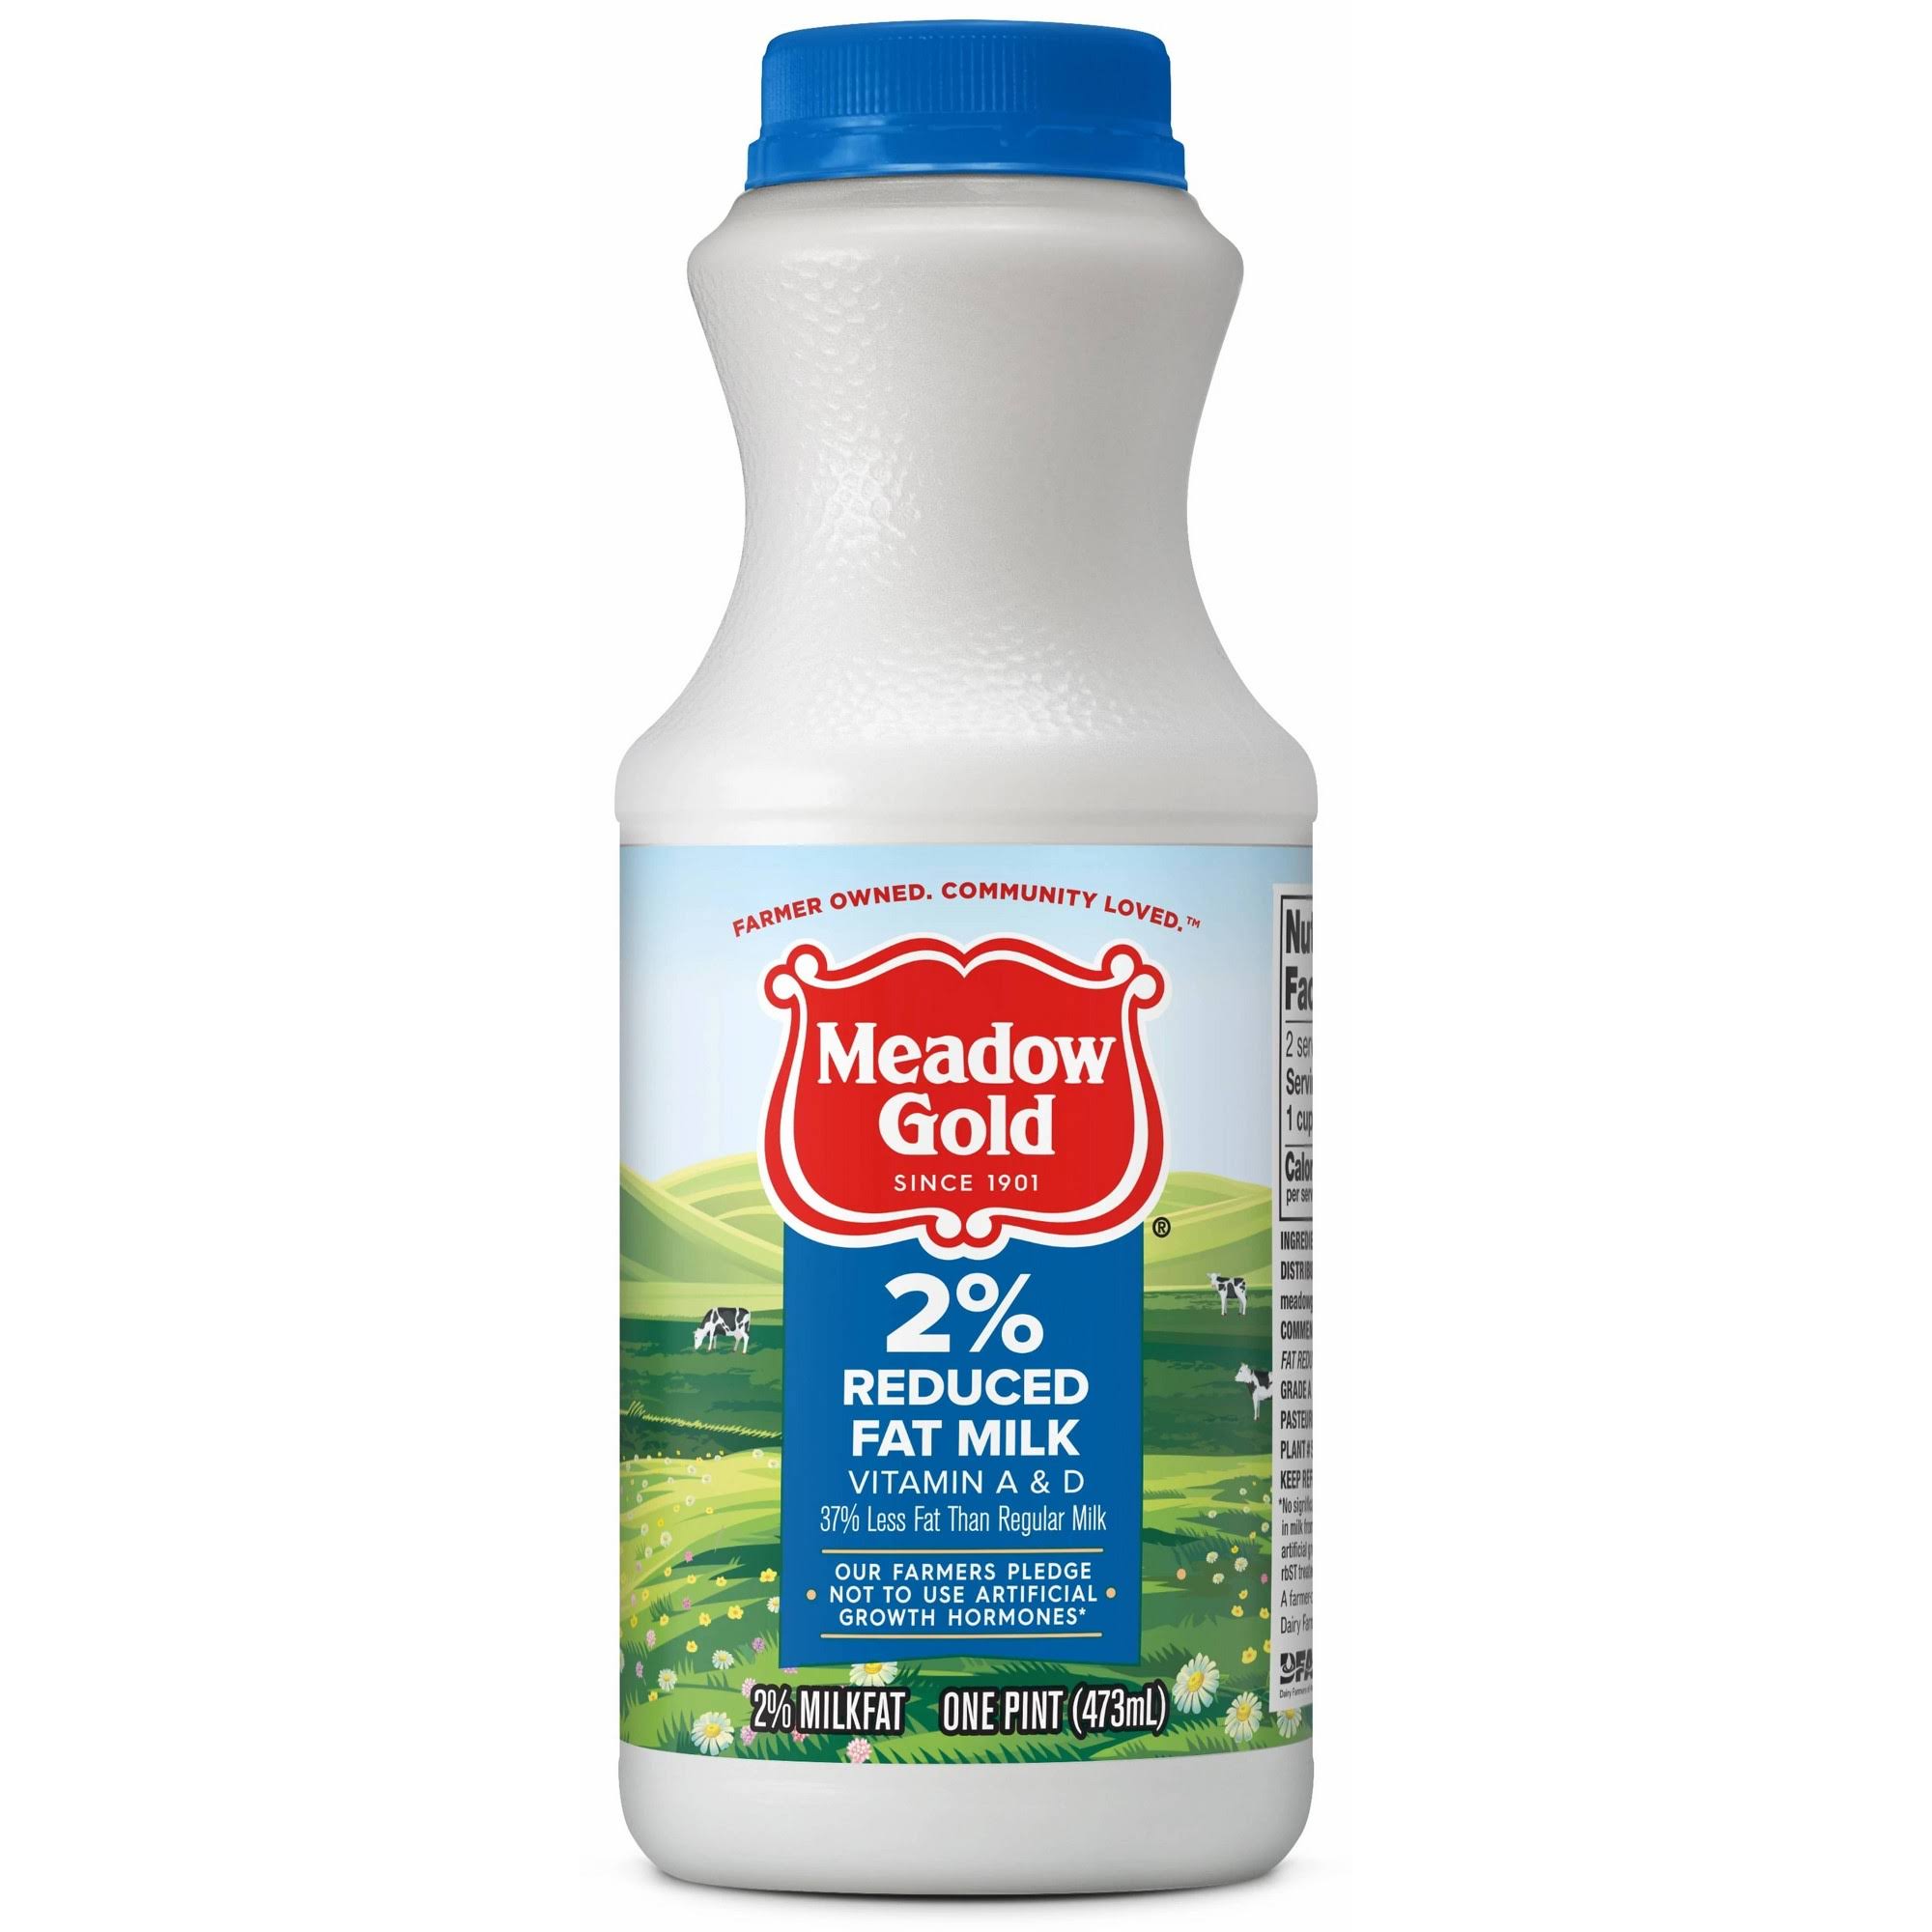 Meadow Gold 2% Reduced Fat Milk - 16 fl oz bottle